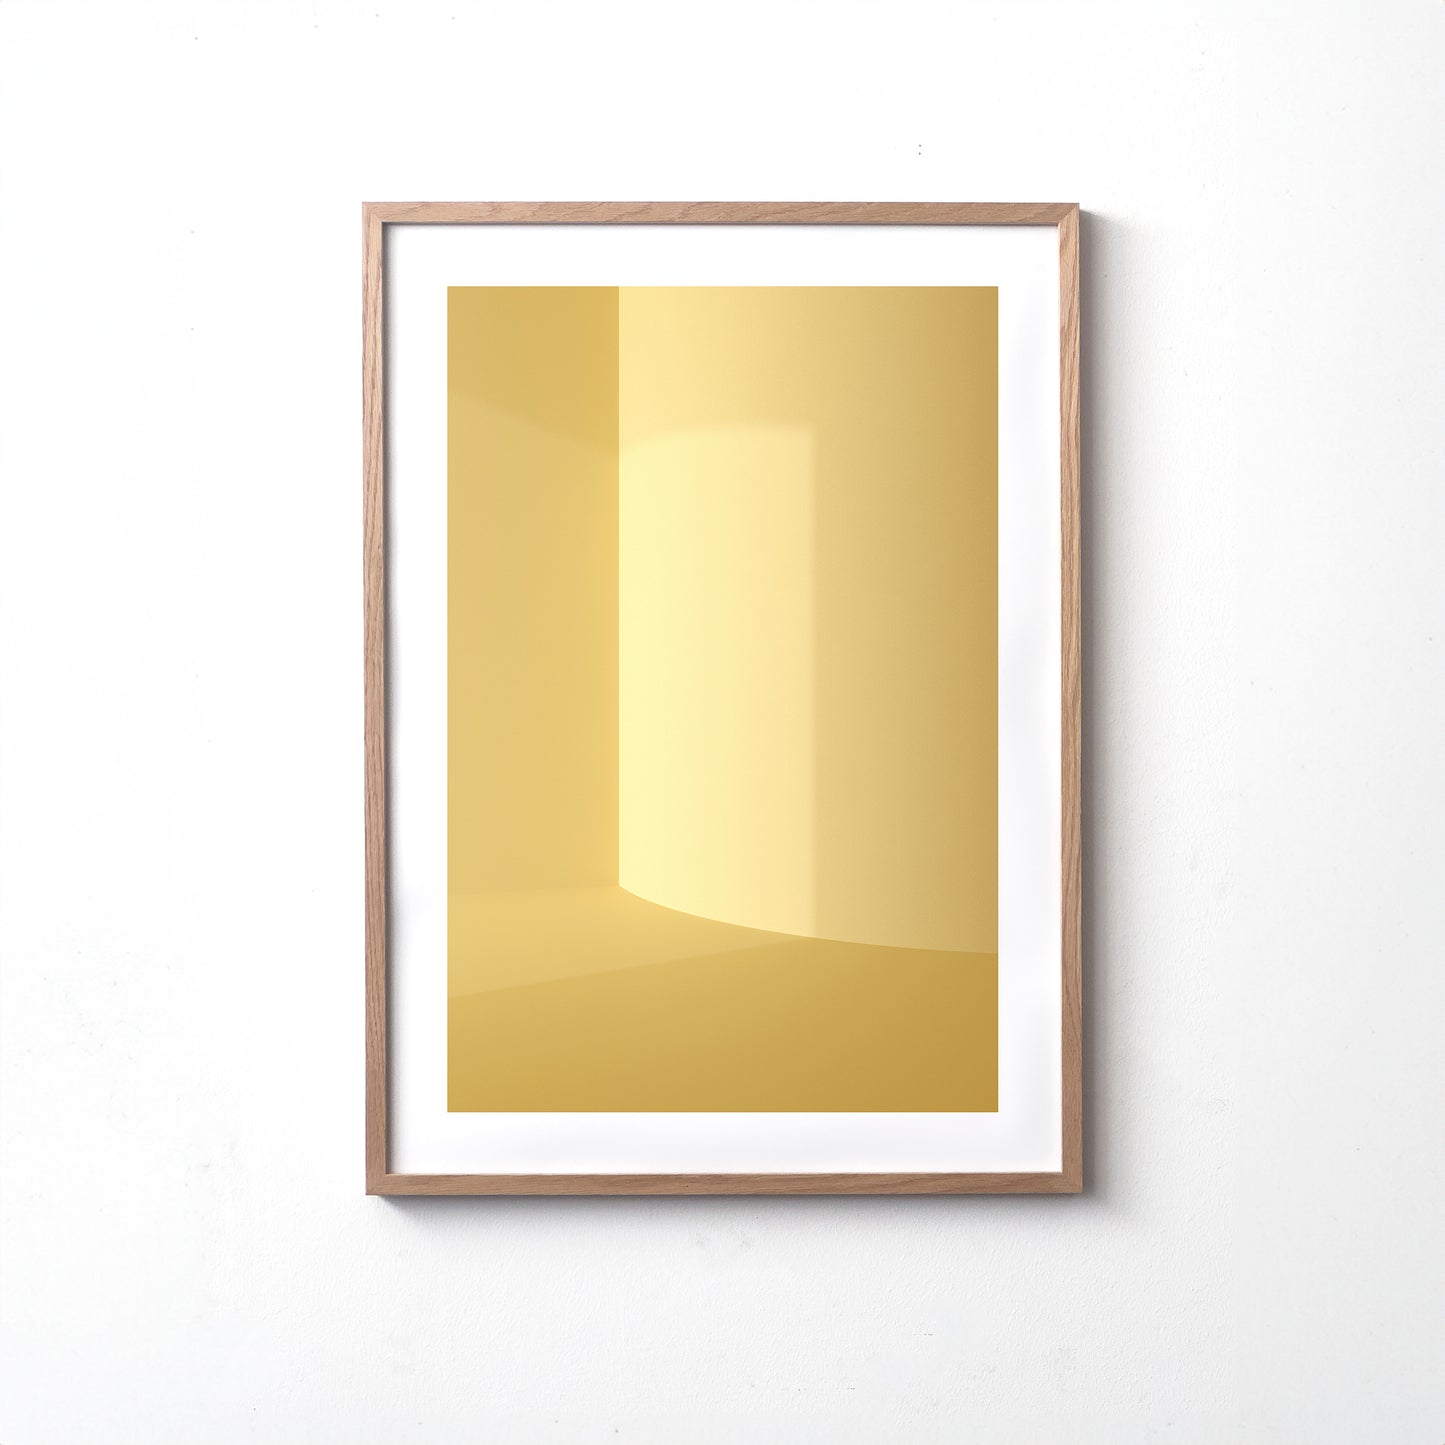 Kunstdruck im Bilderrahmen, Motiv gelb monochrome Raumecke mit Lichteinfall, Titel Styr III